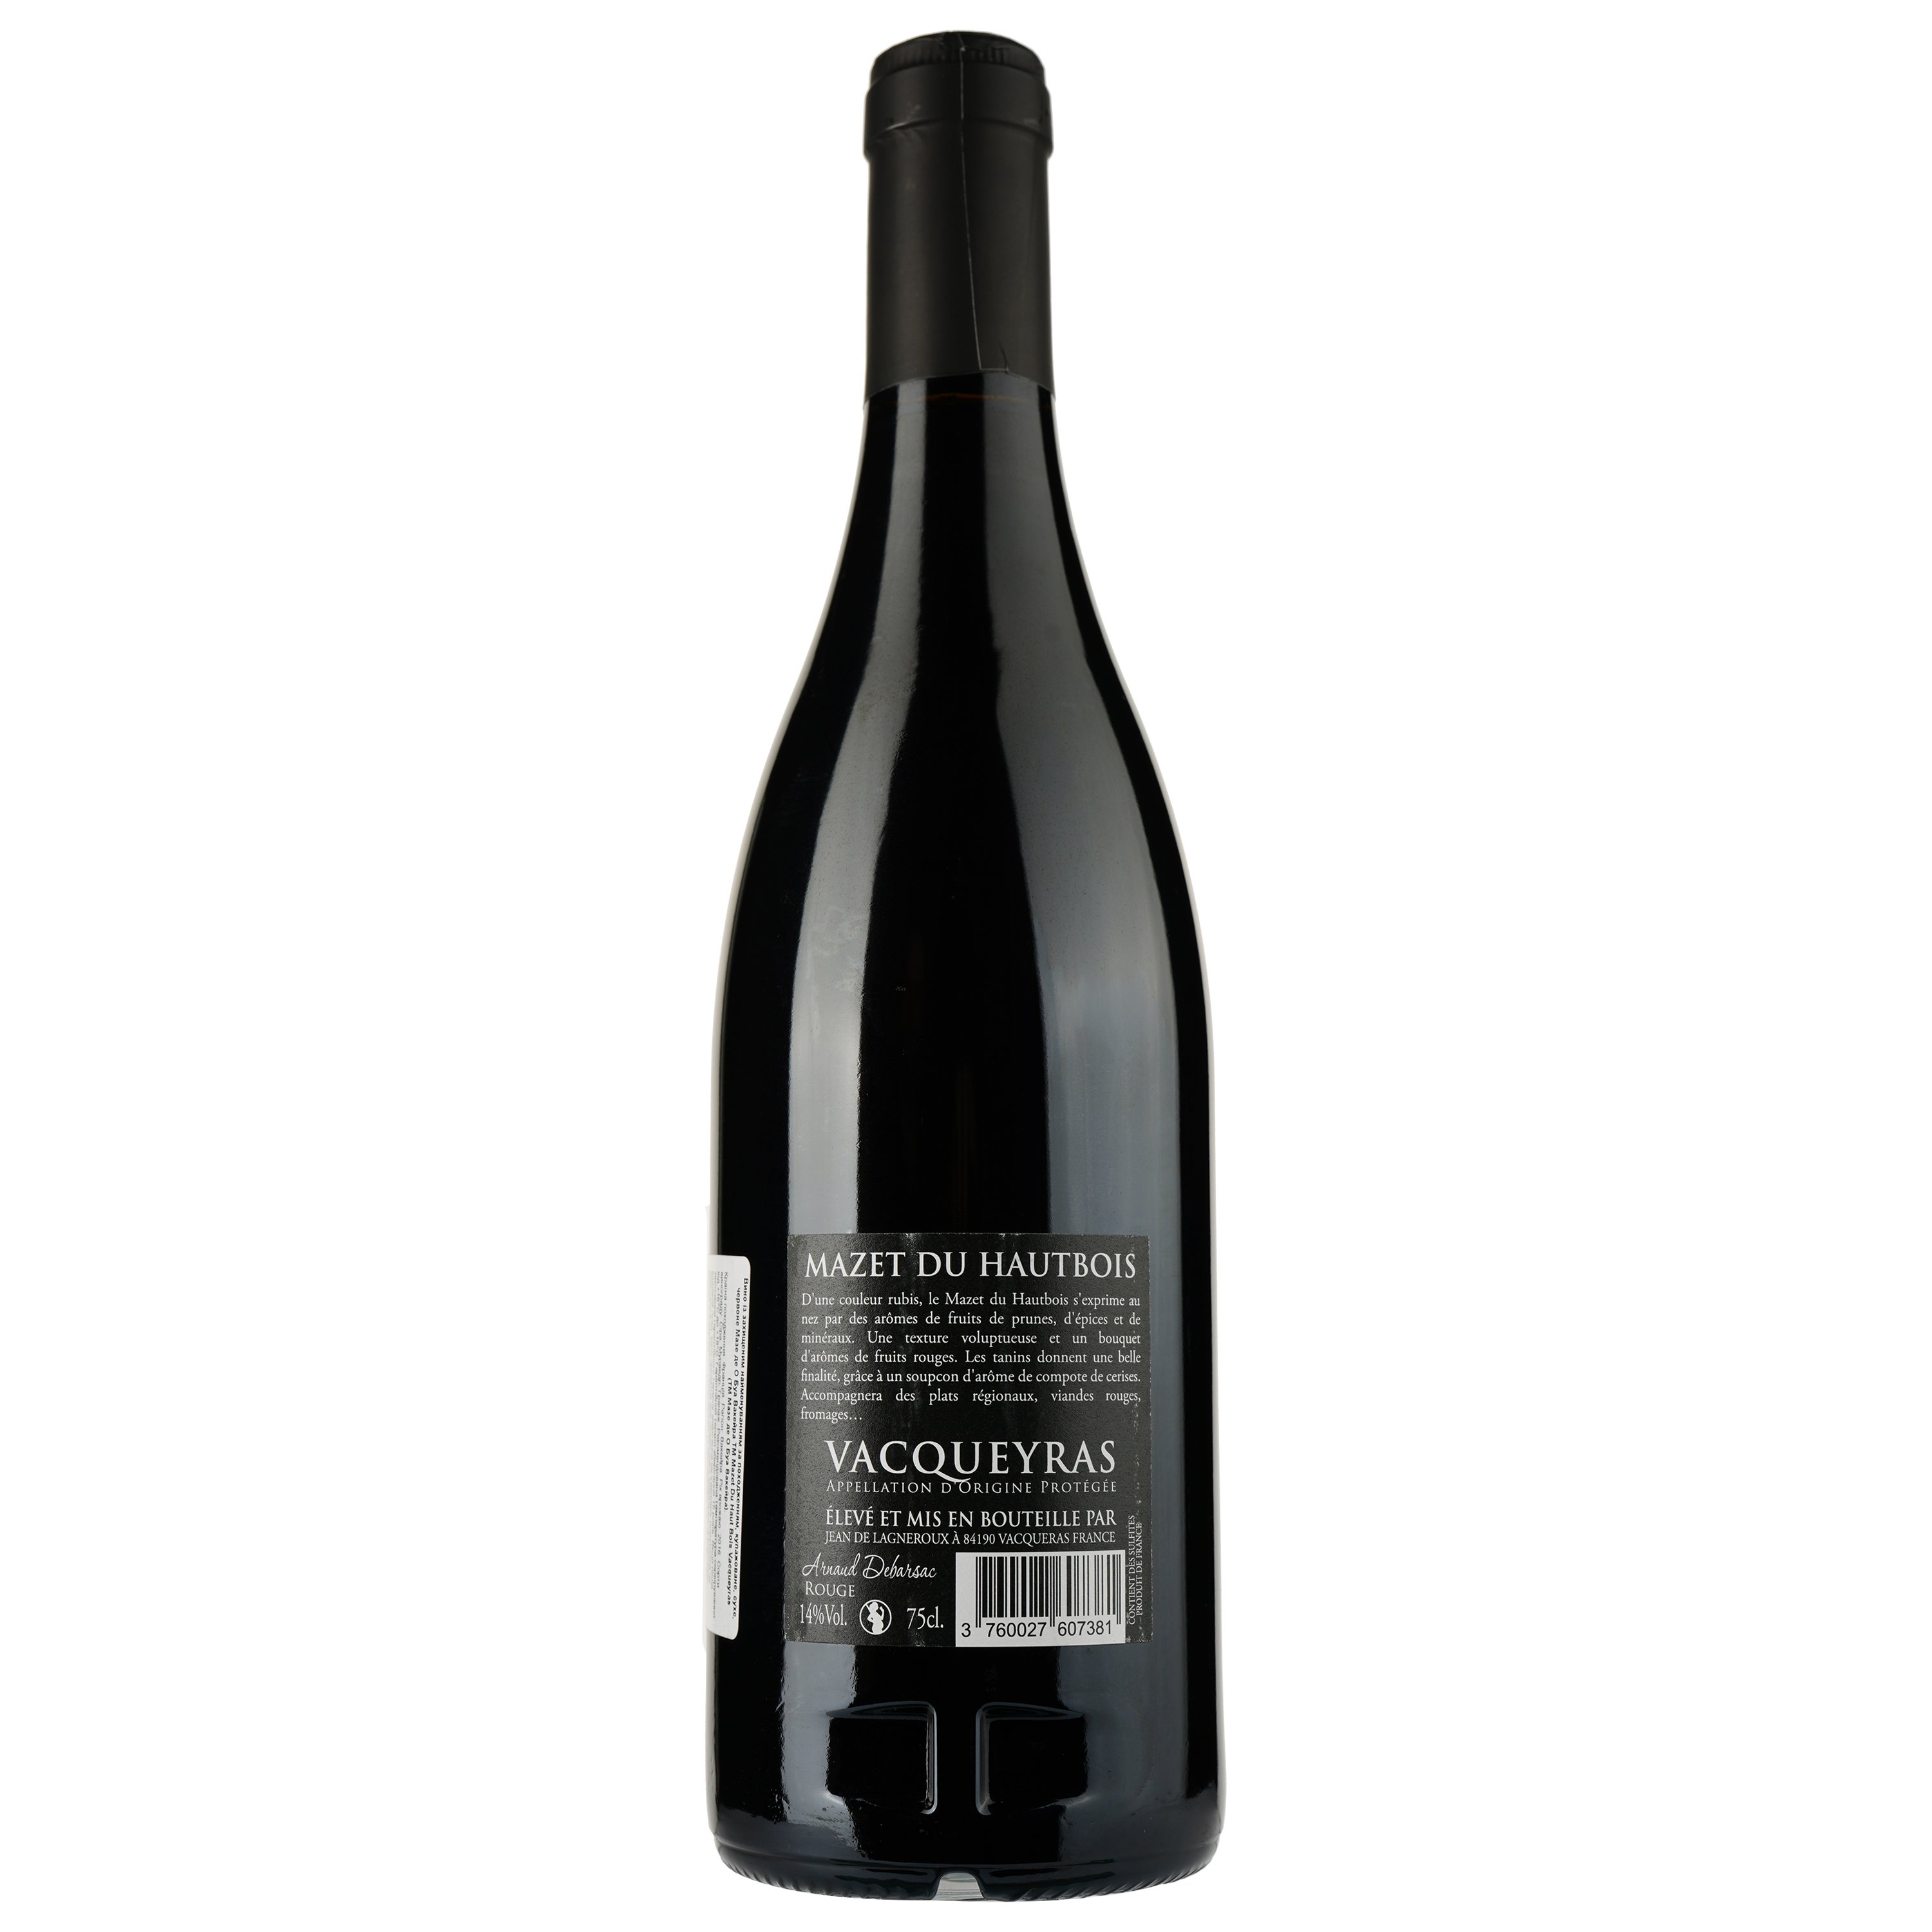 Вино Mazet Du Haut Bois 2016 AOP Vacqueyras, красное, сухое, 0,75 л - фото 2